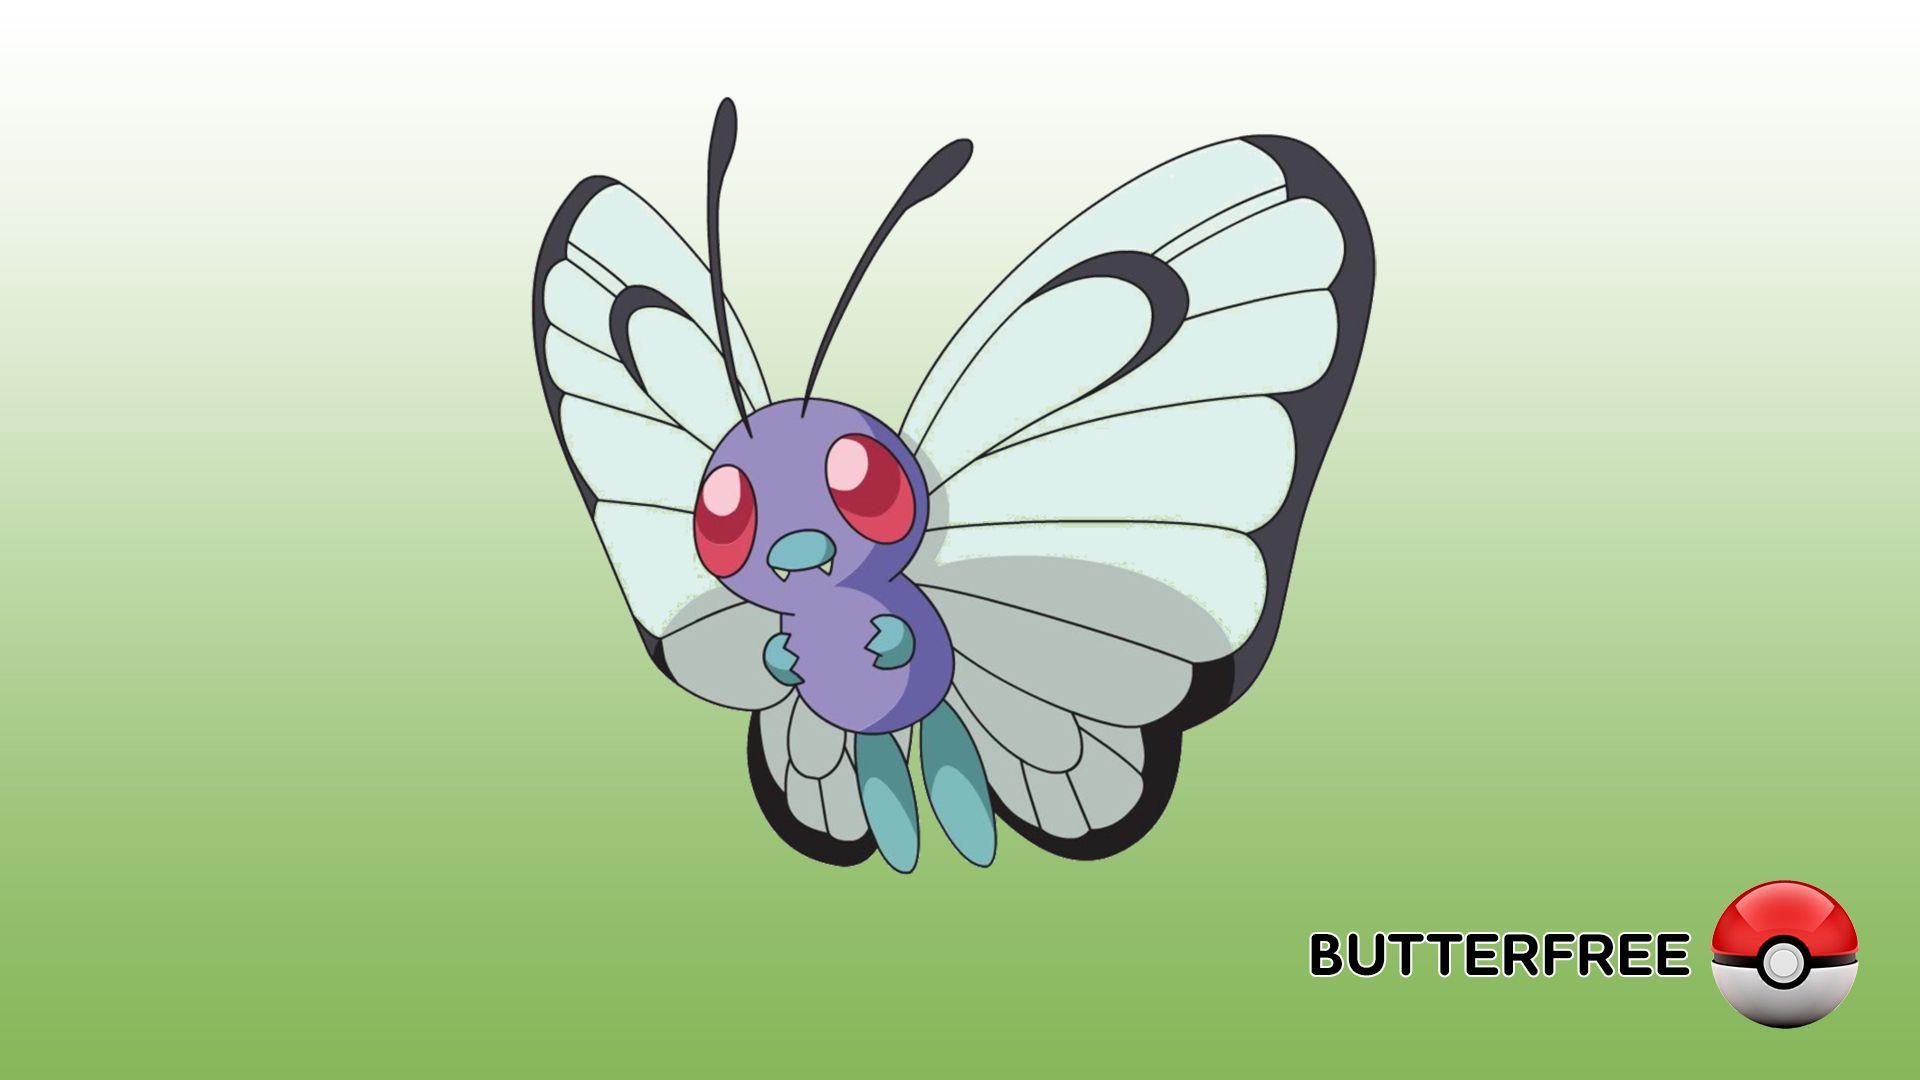 Butterfree wallpaper HD 2016 in Pokemon Go